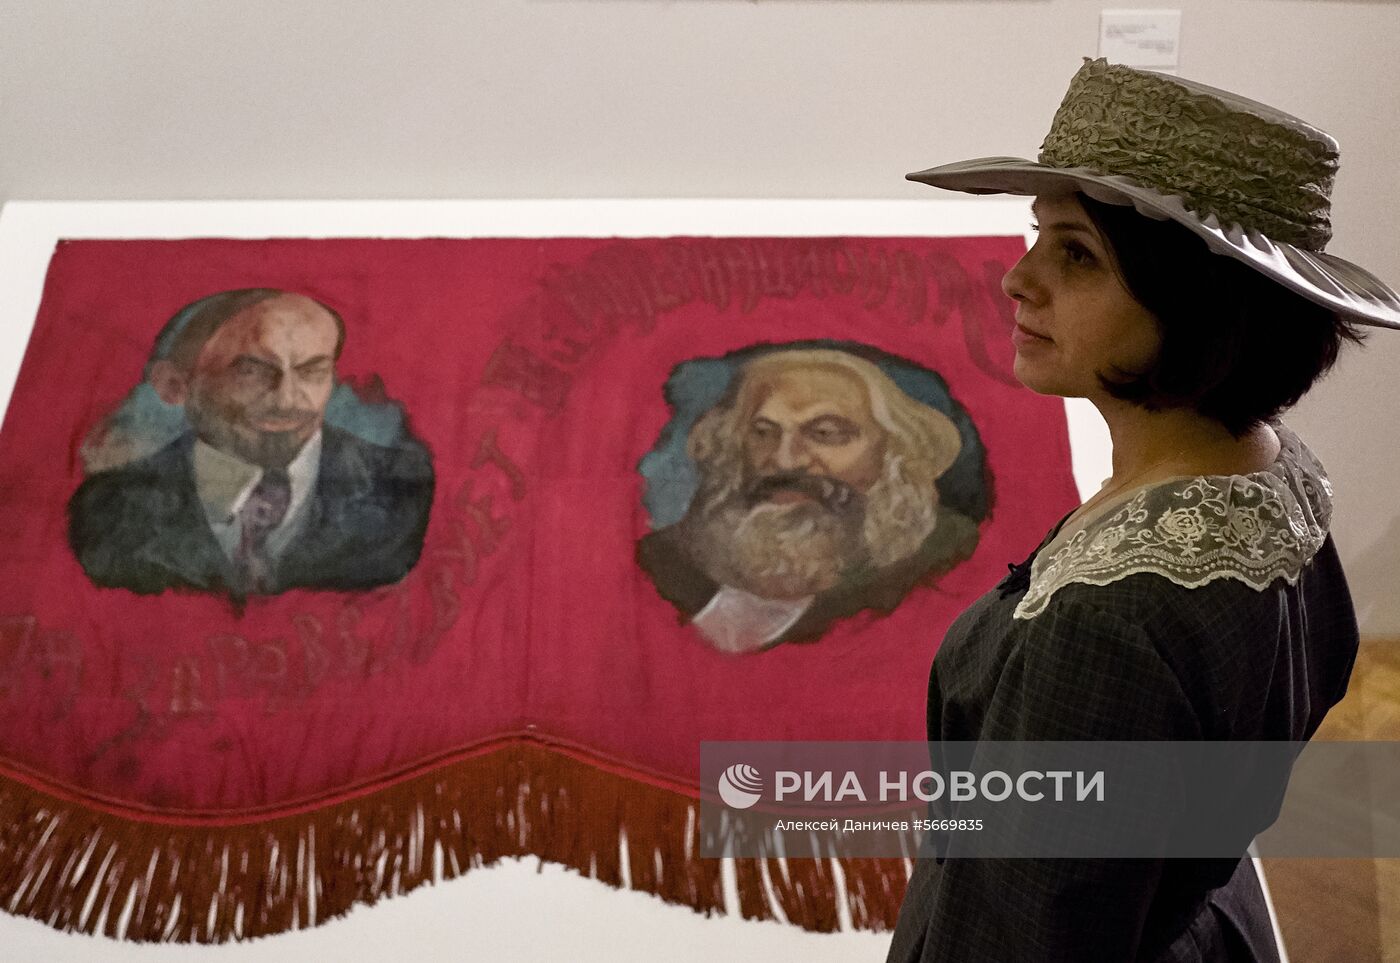 Выставка "Карл Маркс навсегда" в Санкт-Петербурге